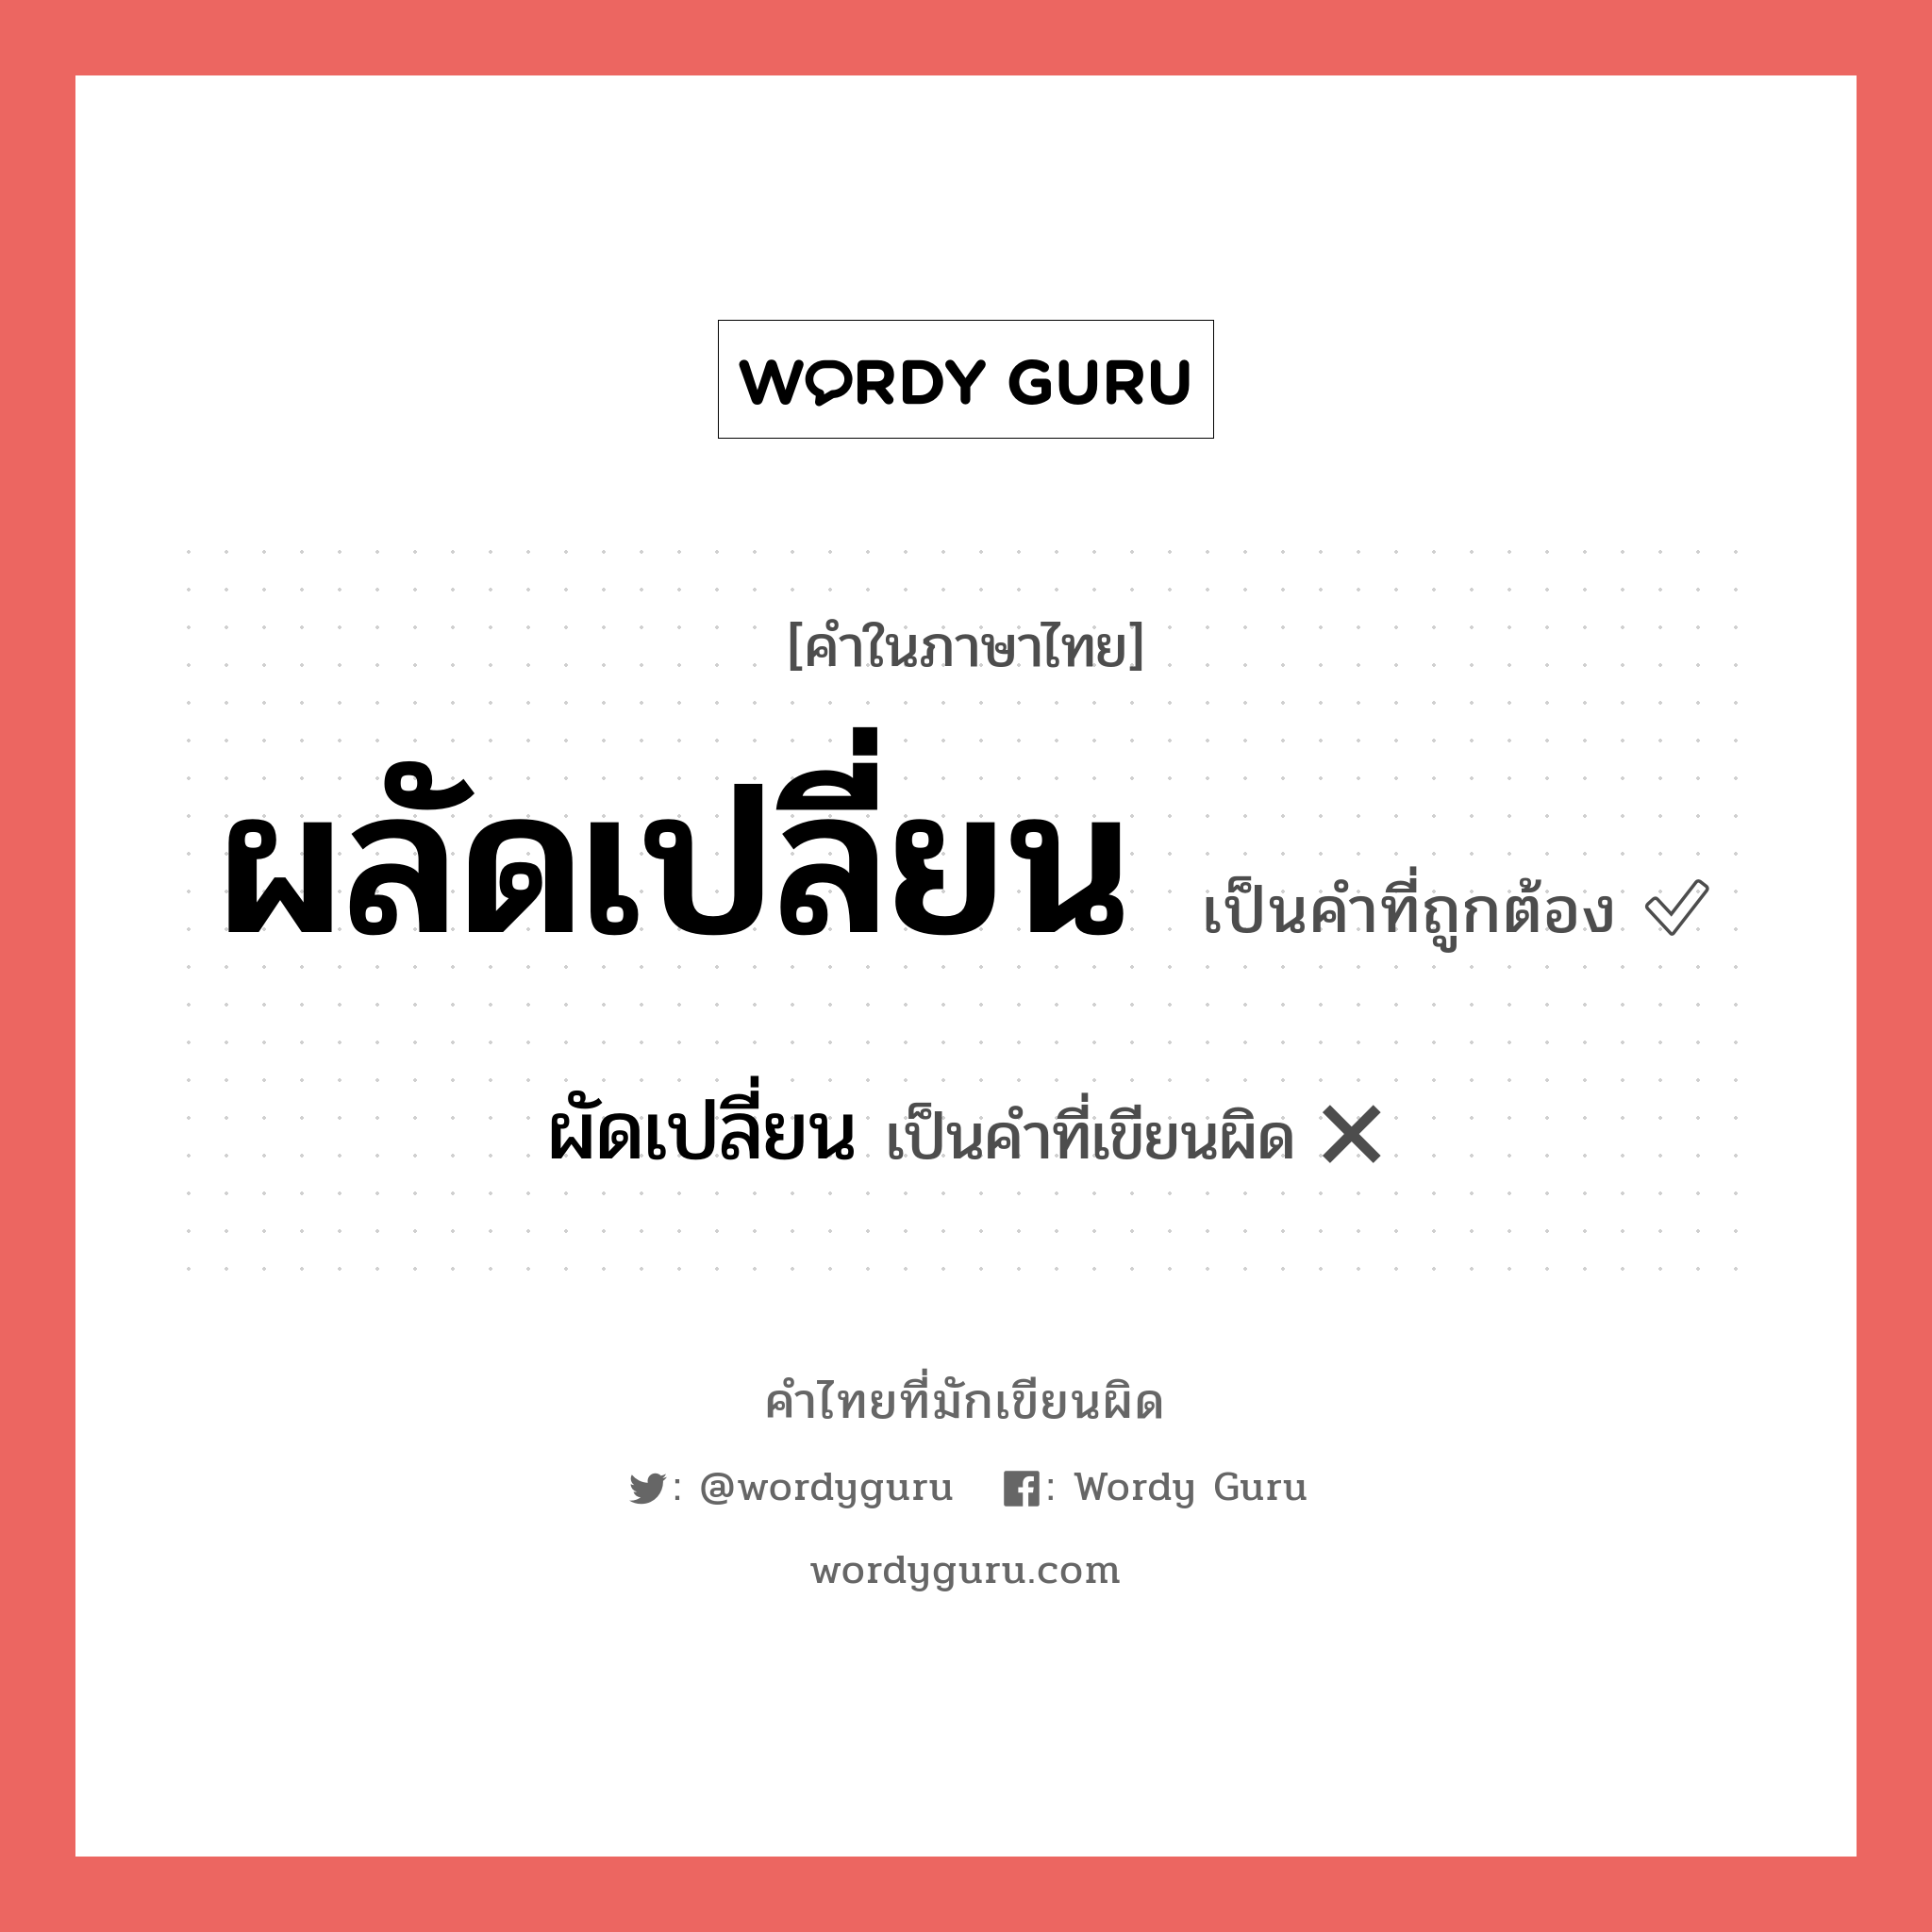 ผัดเปลี่ยน หรือ ผลัดเปลี่ยน คำไหนเขียนถูก?, คำในภาษาไทยที่มักเขียนผิด ผัดเปลี่ยน คำที่ผิด ❌ ผลัดเปลี่ยน